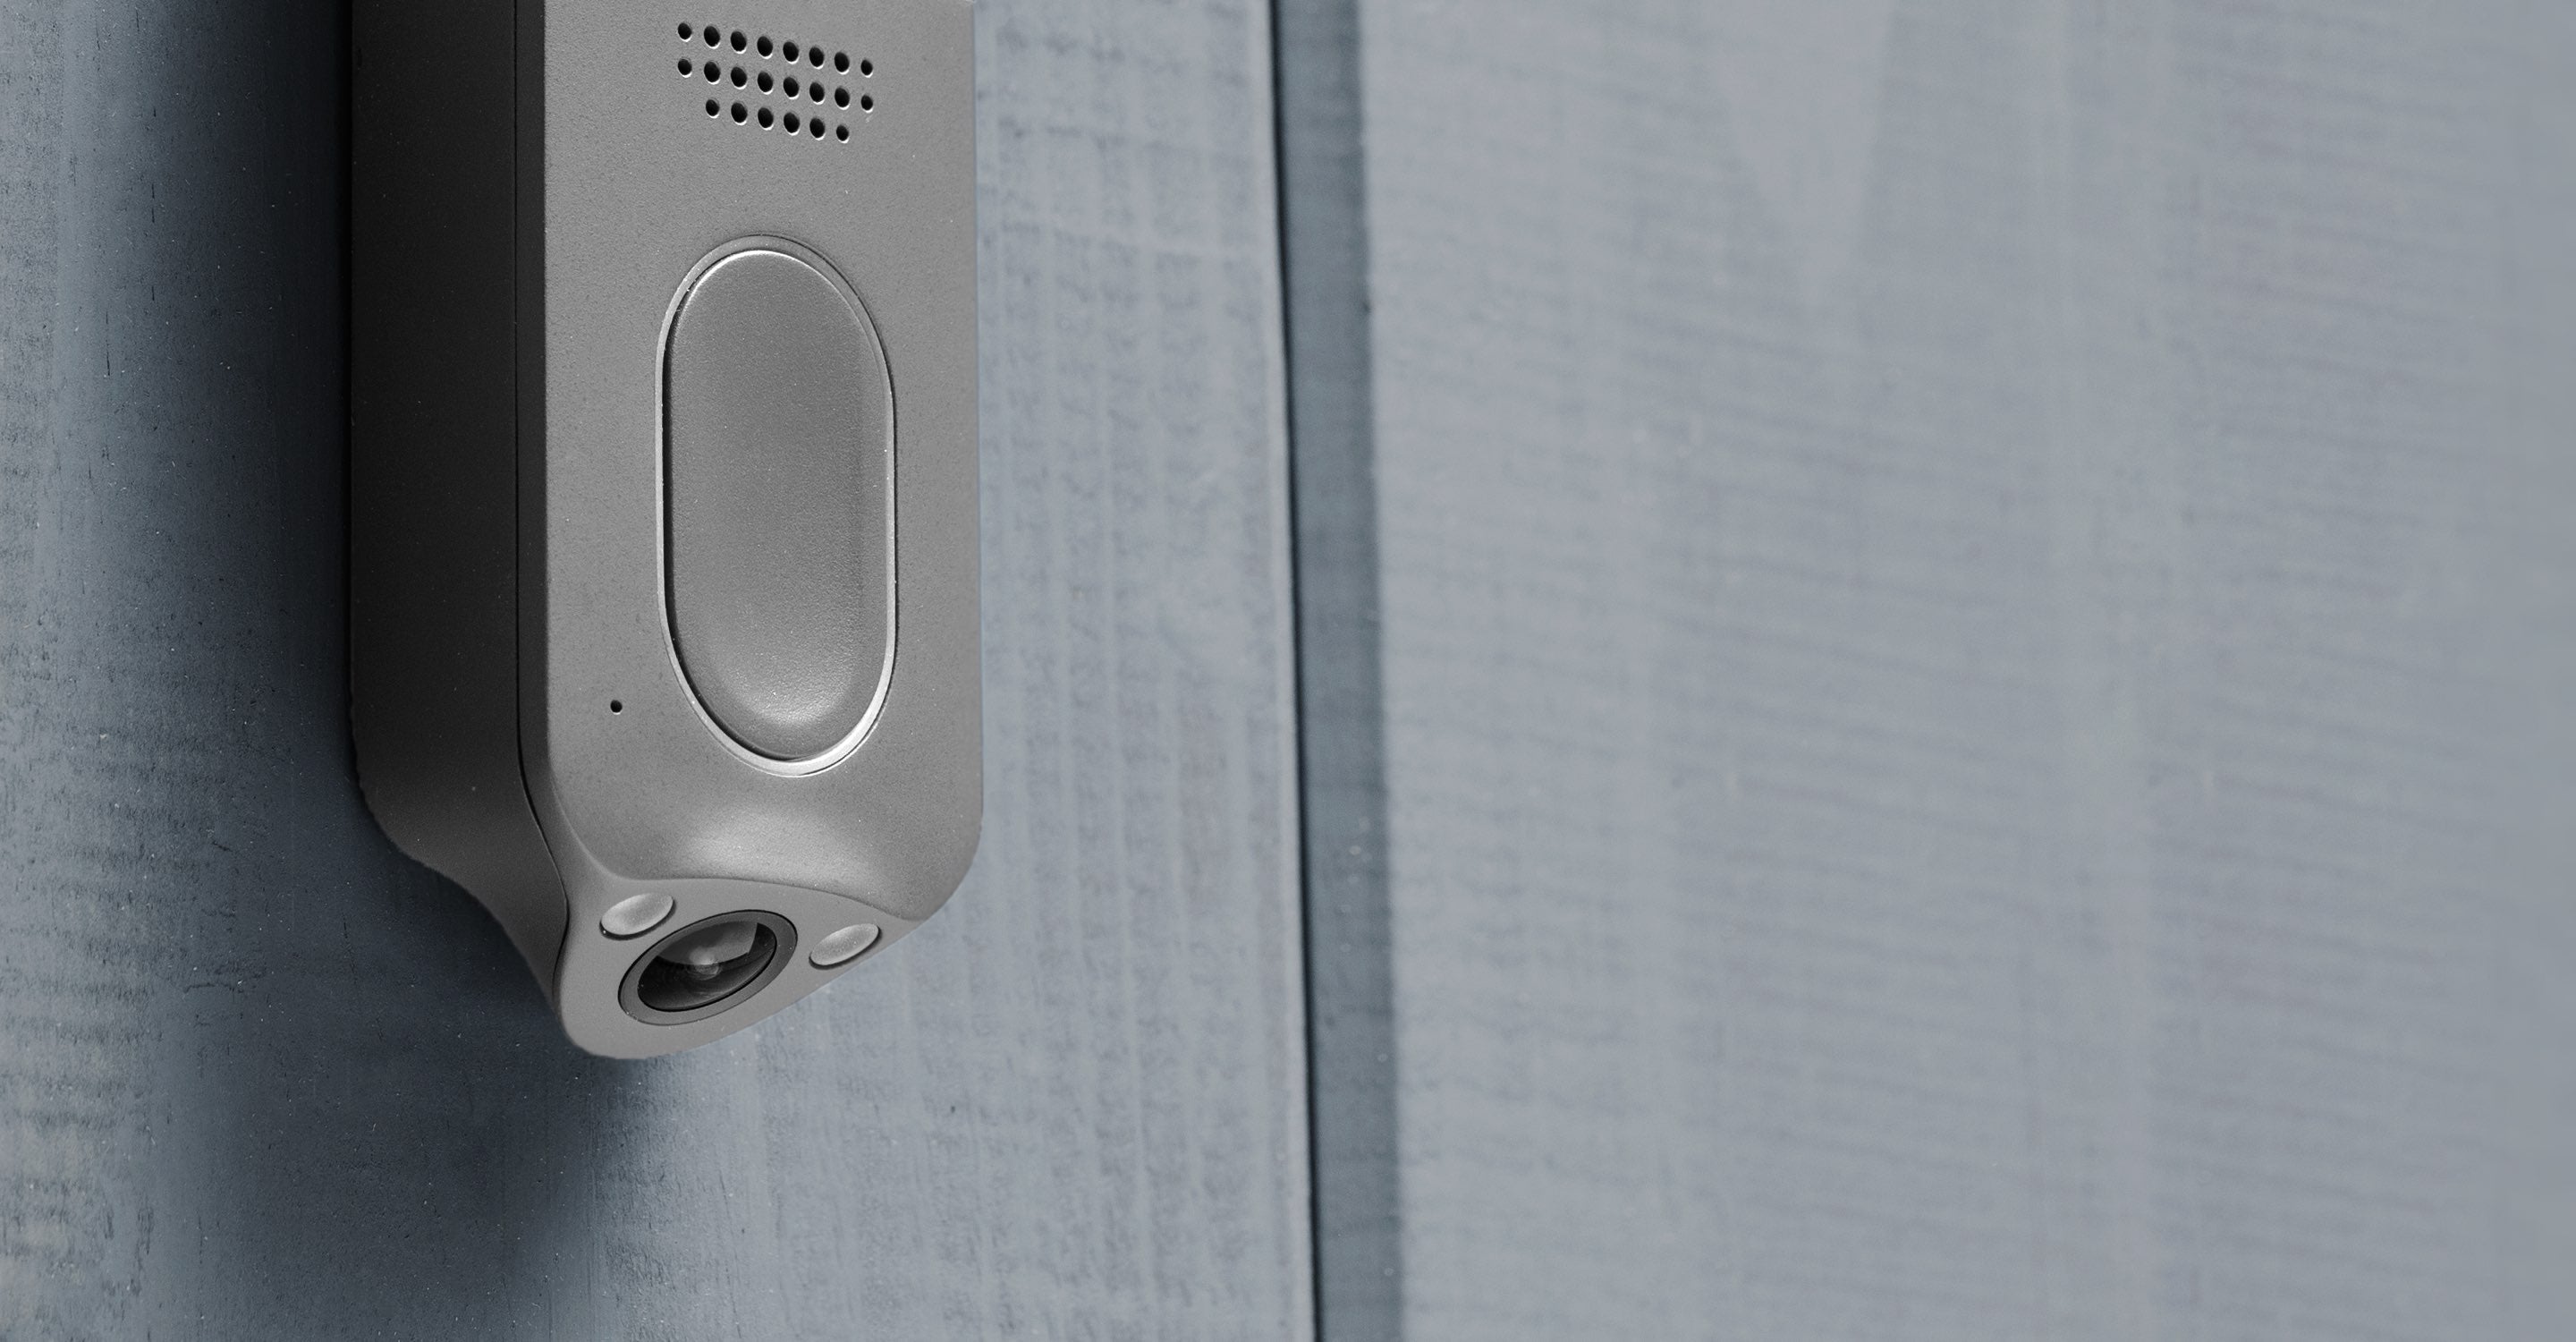 Kuna DualCam Doorbell Bottom Camera Eliminates Blindspots